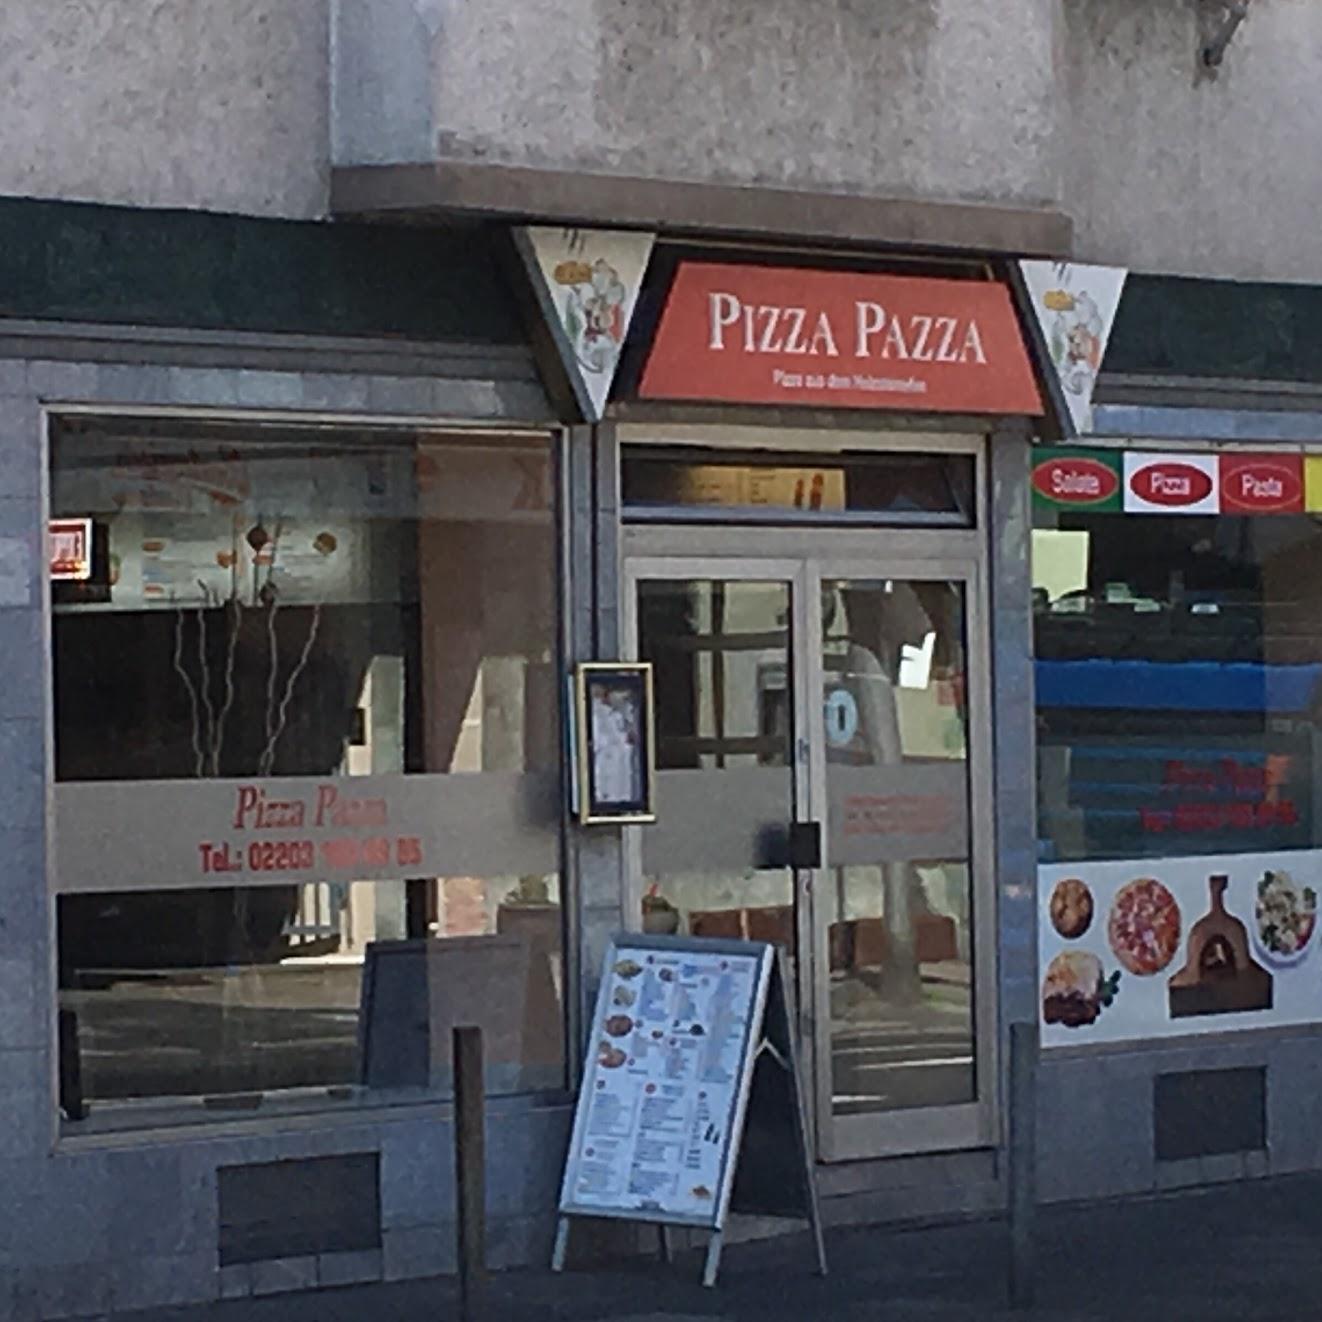 Restaurant "Pizza Duff - Holzsteinofen" in Köln